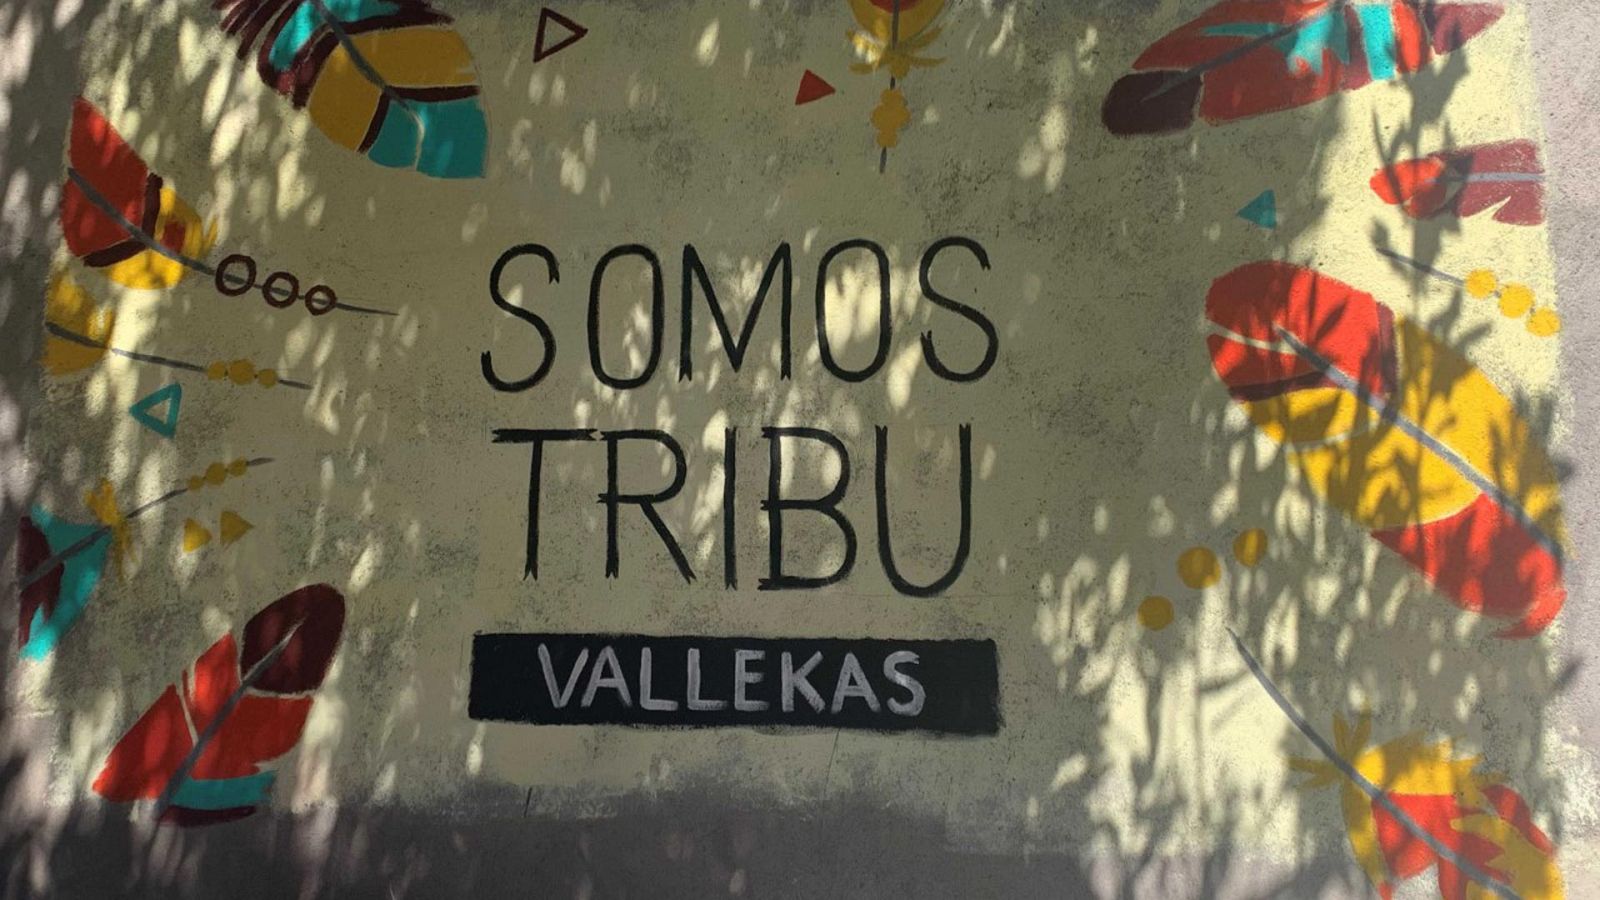 Crónicas - La tribu de Vallecas - Ver ahora